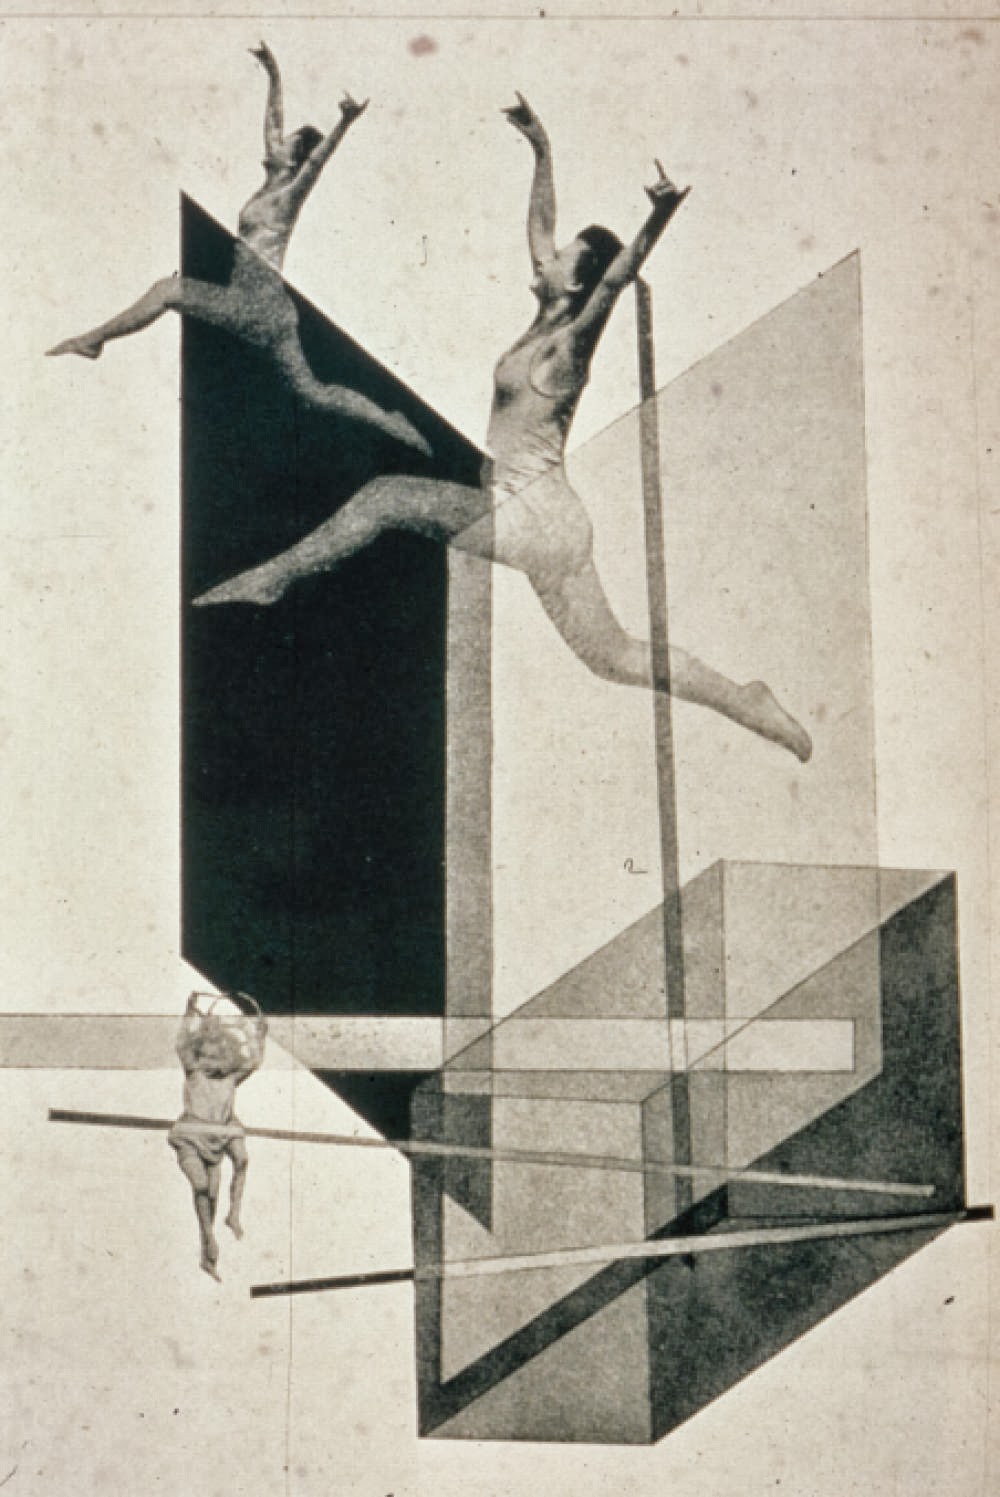 Doctor Ojiplático. László Moholy-Nagy. Human Mechanics. c.1925